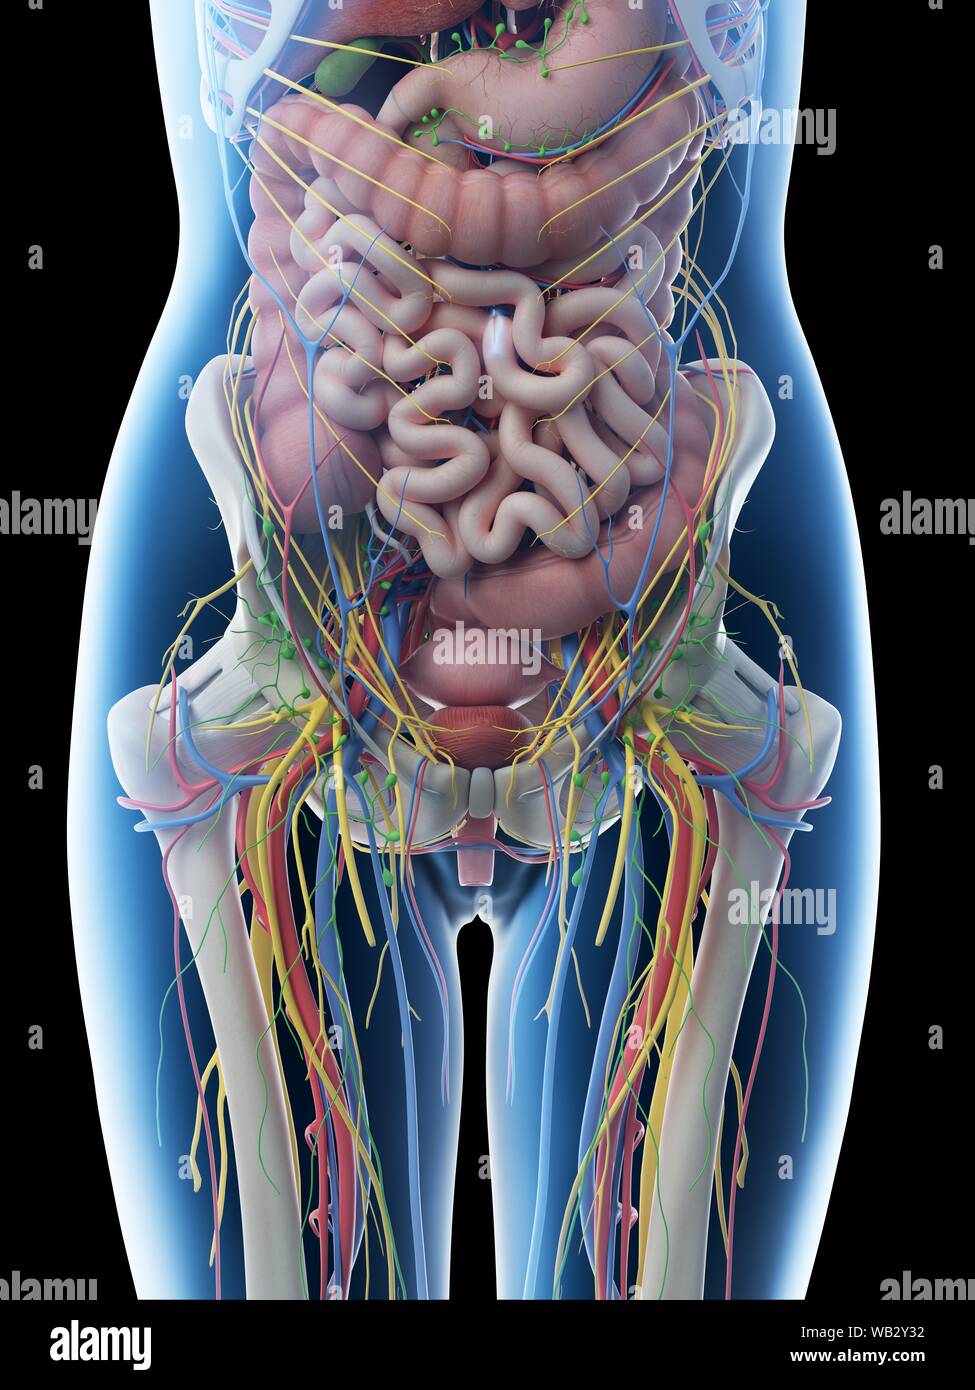 Anatomía Abdominal Femenino Equipo De Ilustración Fotografía De Stock